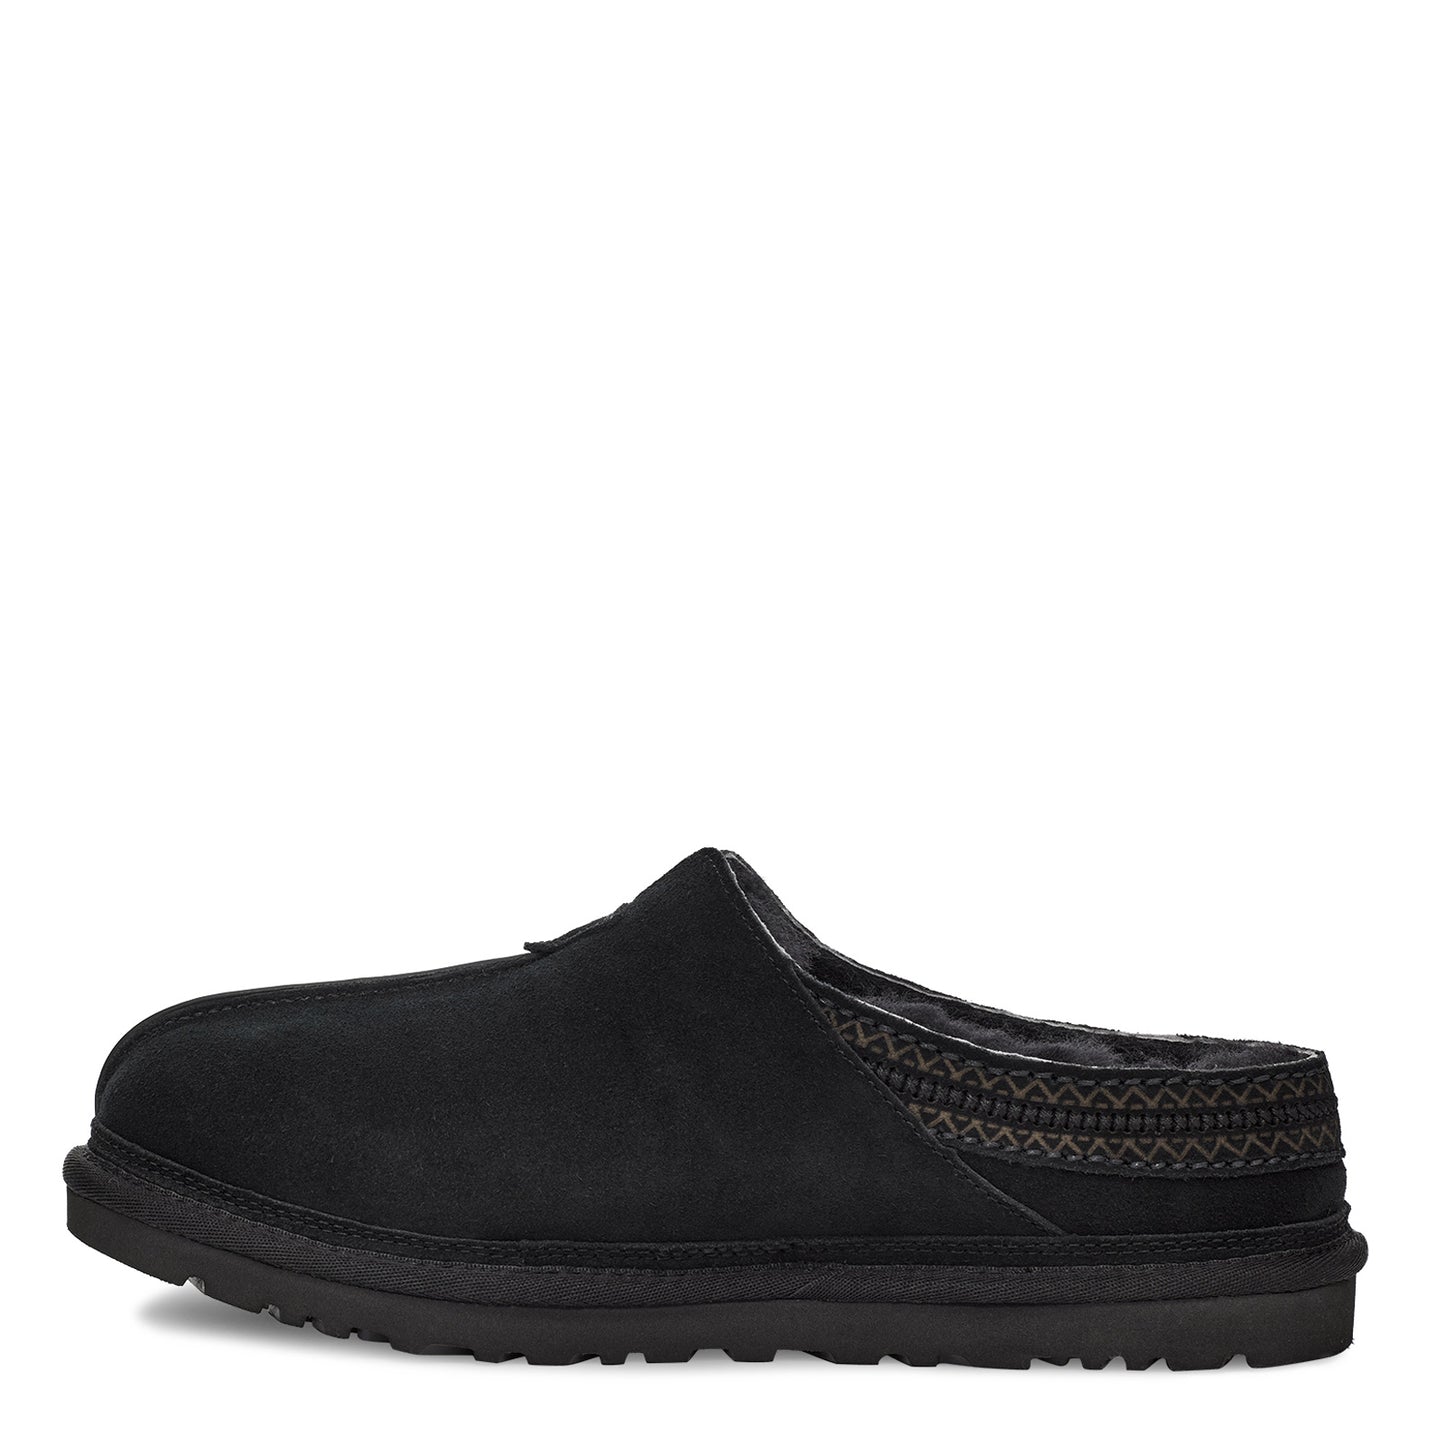 Peltz Shoes  Men's Ugg Neuman Slipper Black 1113631-BLK